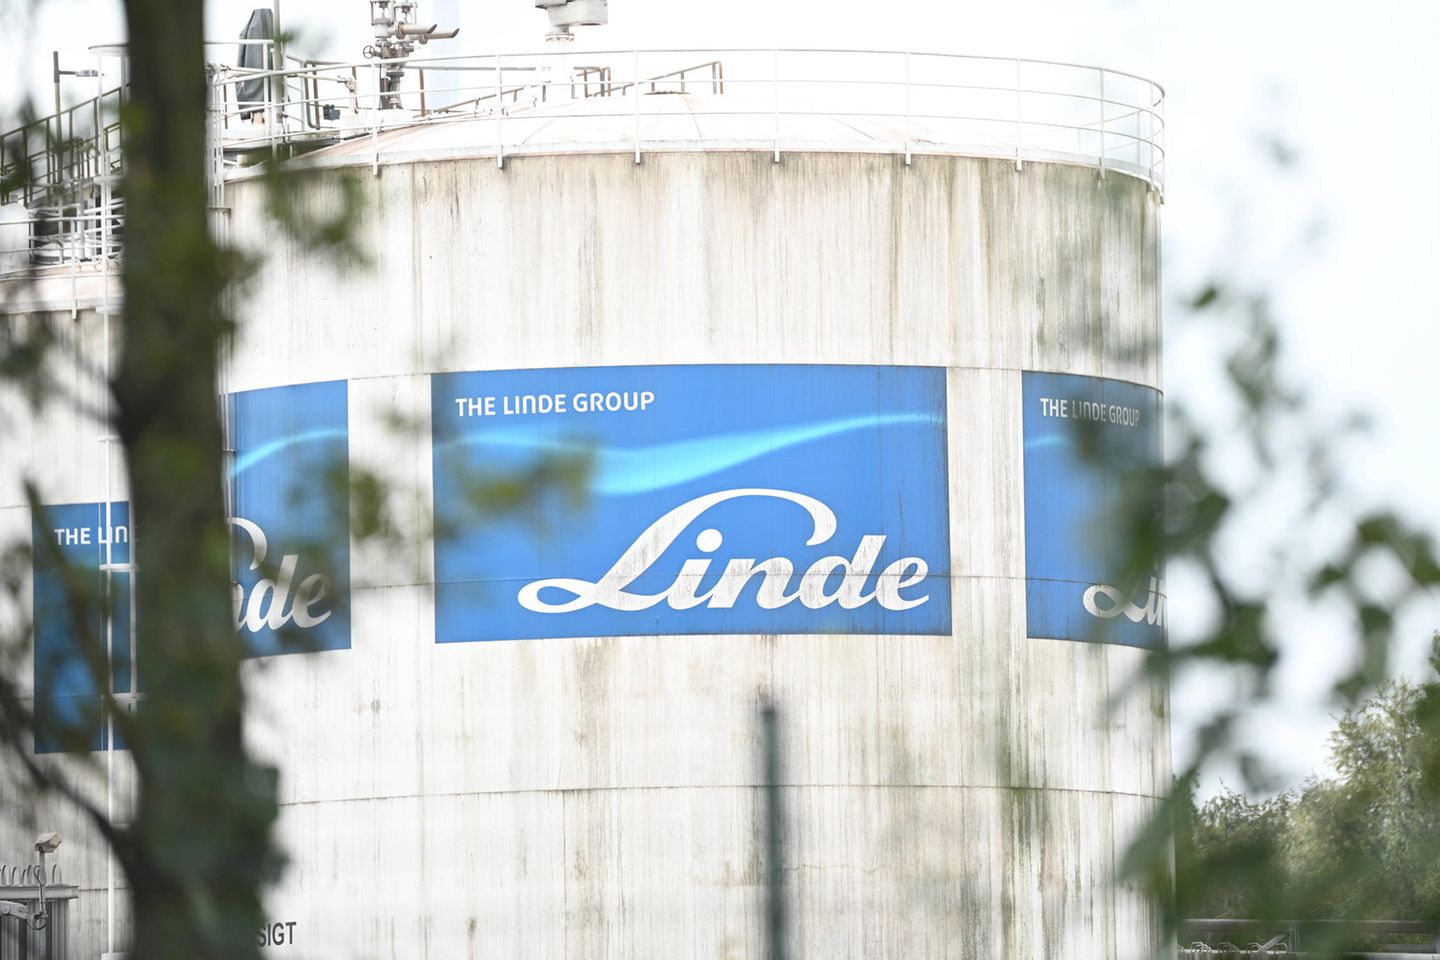 Der Industriegasekonzern Linde verabschiedet sich aus dem Dax